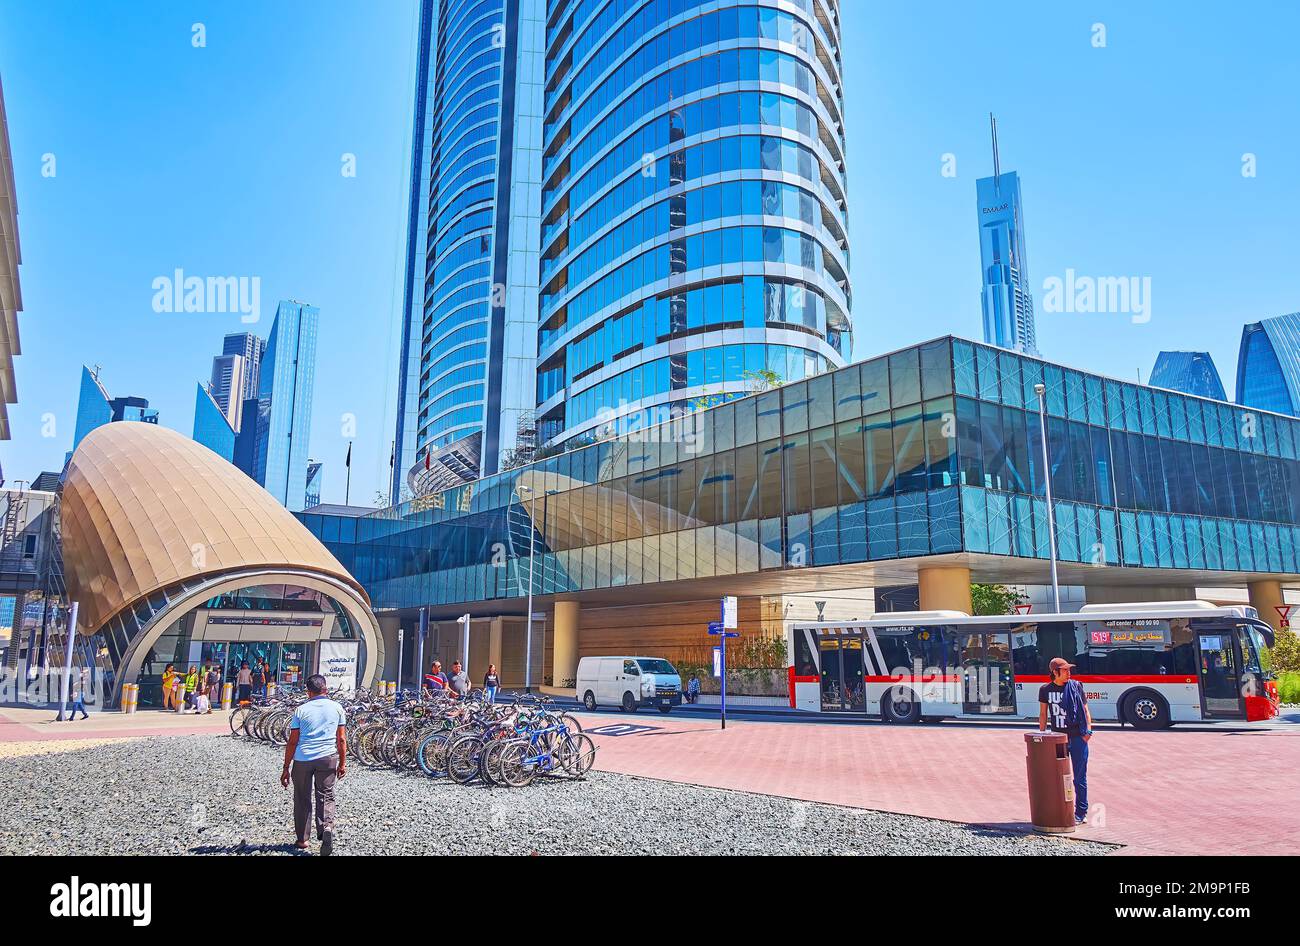 DUBAI, Vereinigte Arabische Emirate - 6. MÄRZ 2020: Fahrradparkplatz am Eingang zur U-Bahn-Station Burj Khalifa-Dubai Mall, die zur U-Bahn und zum langen Glashochweg führt Stockfoto